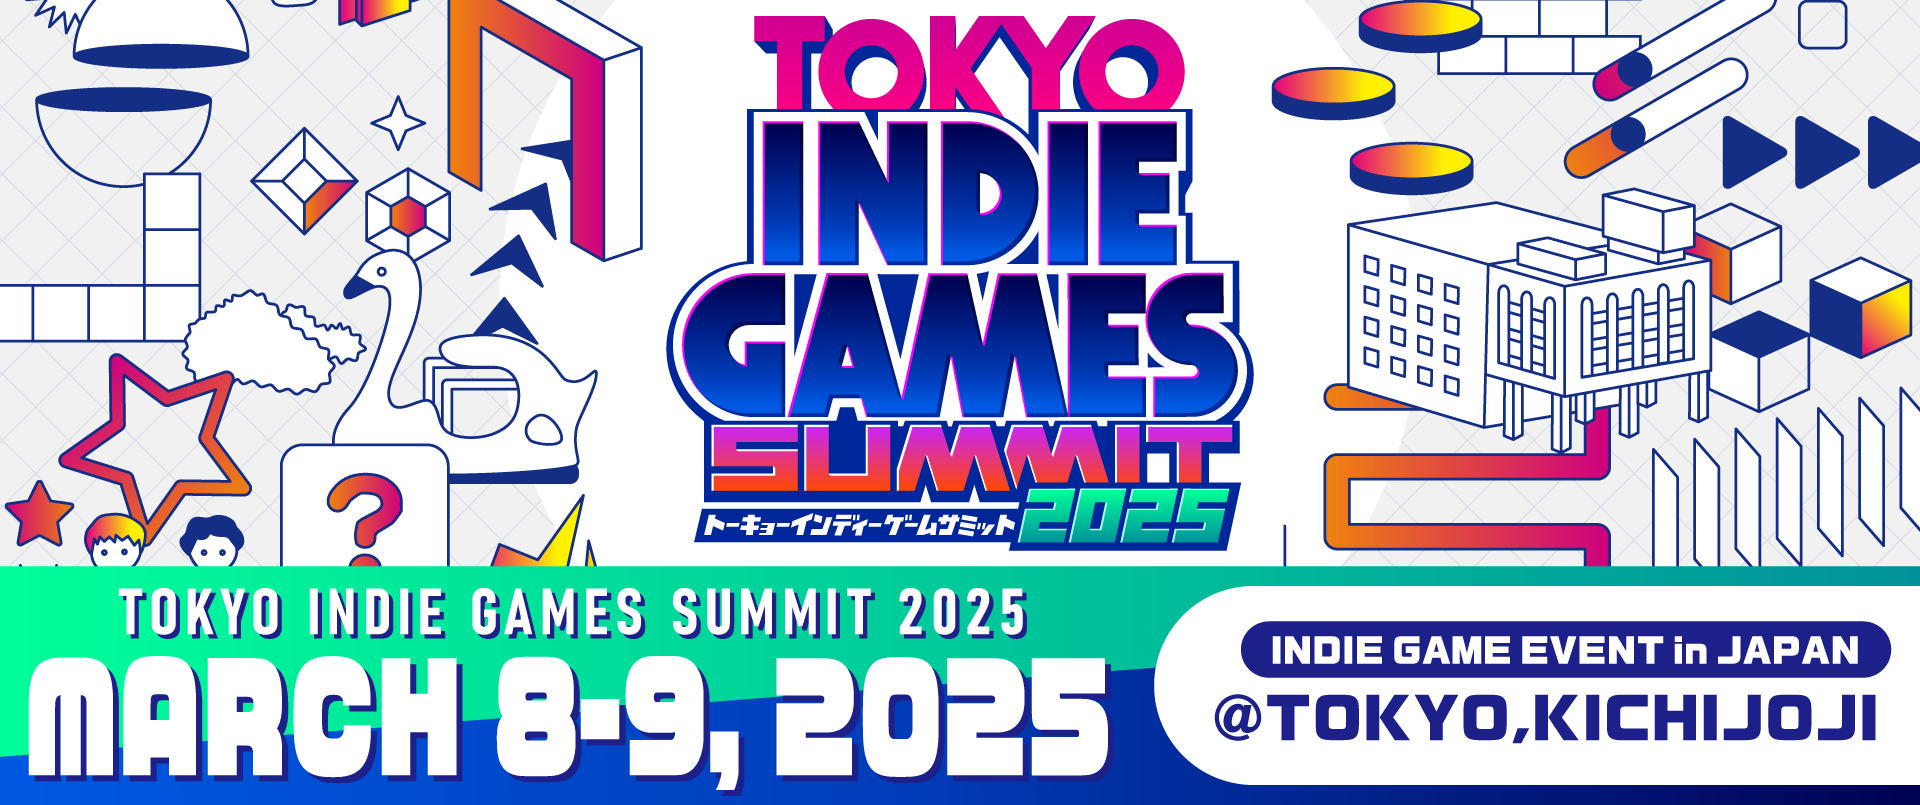 TOKYO INDIE GAMES SUMMIT,will be held at Musashino Kokaido (Kichijoji) on Saturday, March 8, Sunday 9, 2025!